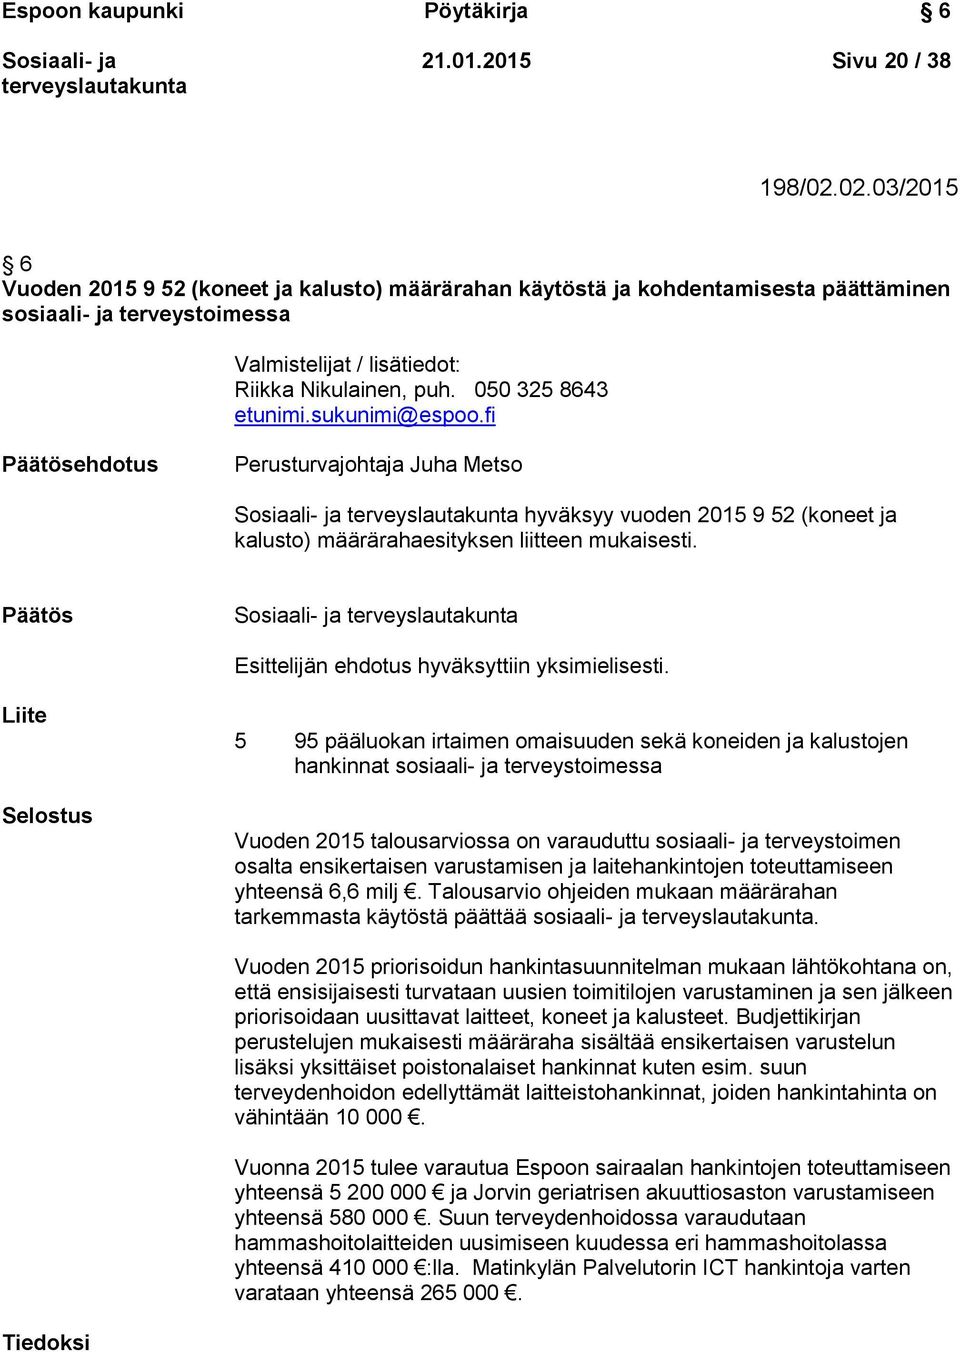 050 325 8643 etunimi.sukunimi@espoo.fi Päätösehdotus Perusturvajohtaja Juha Metso hyväksyy vuoden 2015 9 52 (koneet ja kalusto) määrärahaesityksen liitteen mukaisesti.